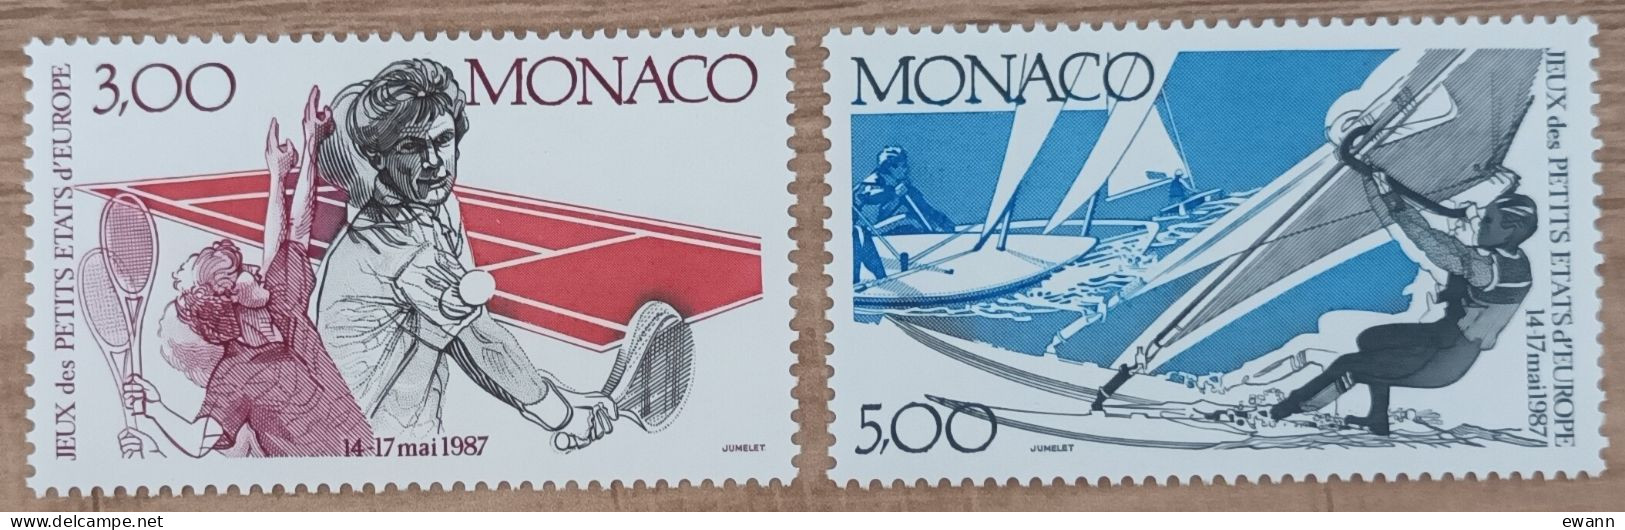 Monaco - YT N°1579, 1580 - 2es Jeux Des Petits Etats D'Europe - 1987 - Neuf - Unused Stamps